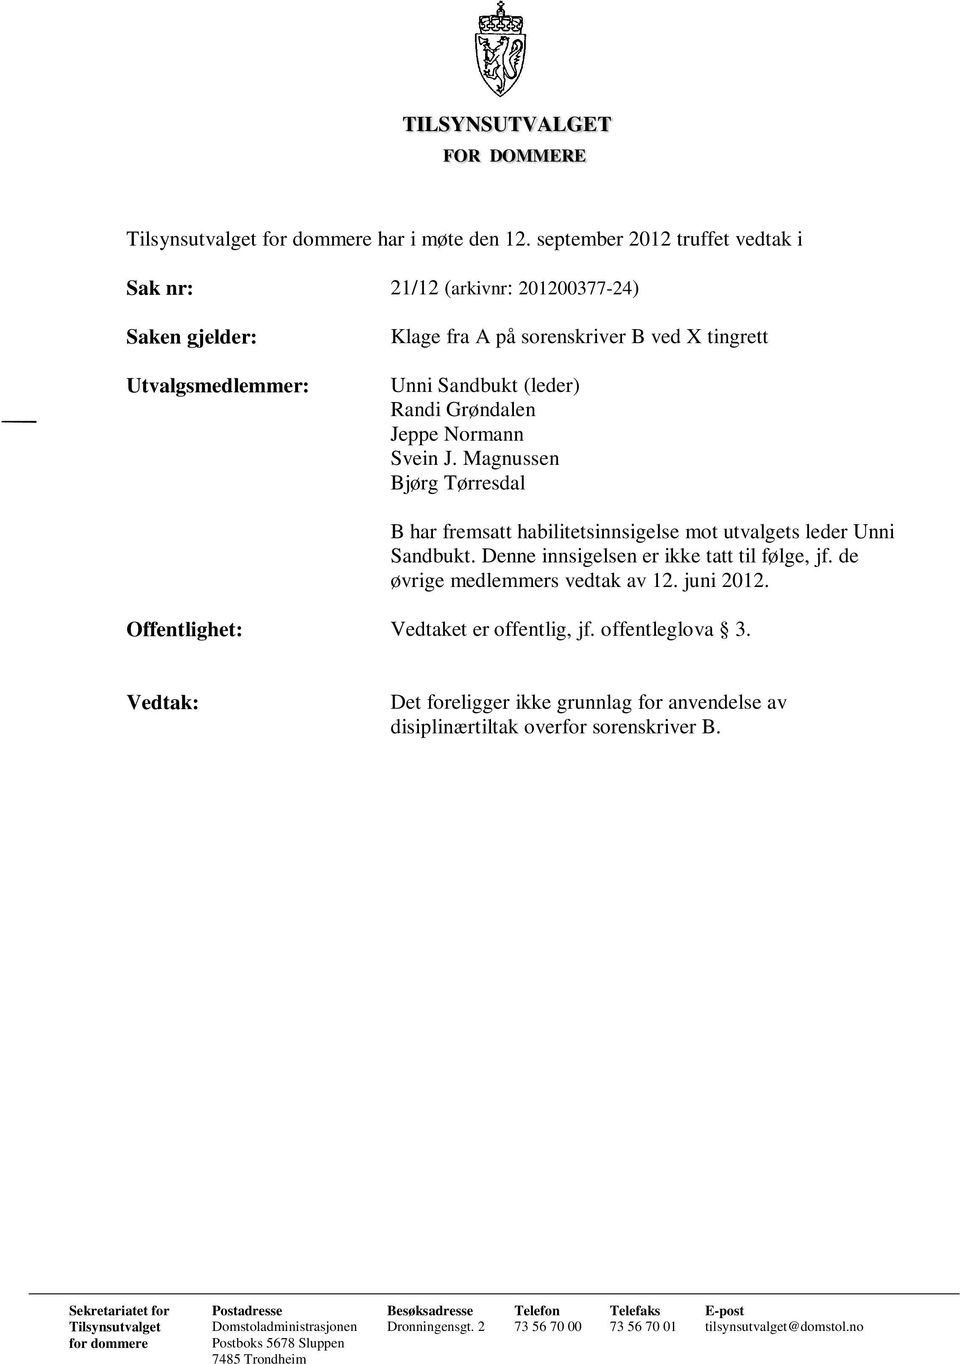 Svein J. Magnussen Bjørg Tørresdal B har fremsatt habilitetsinnsigelse mot utvalgets leder Unni Sandbukt. Denne innsigelsen er ikke tatt til følge, jf. de øvrige medlemmers vedtak av 12. juni 2012.